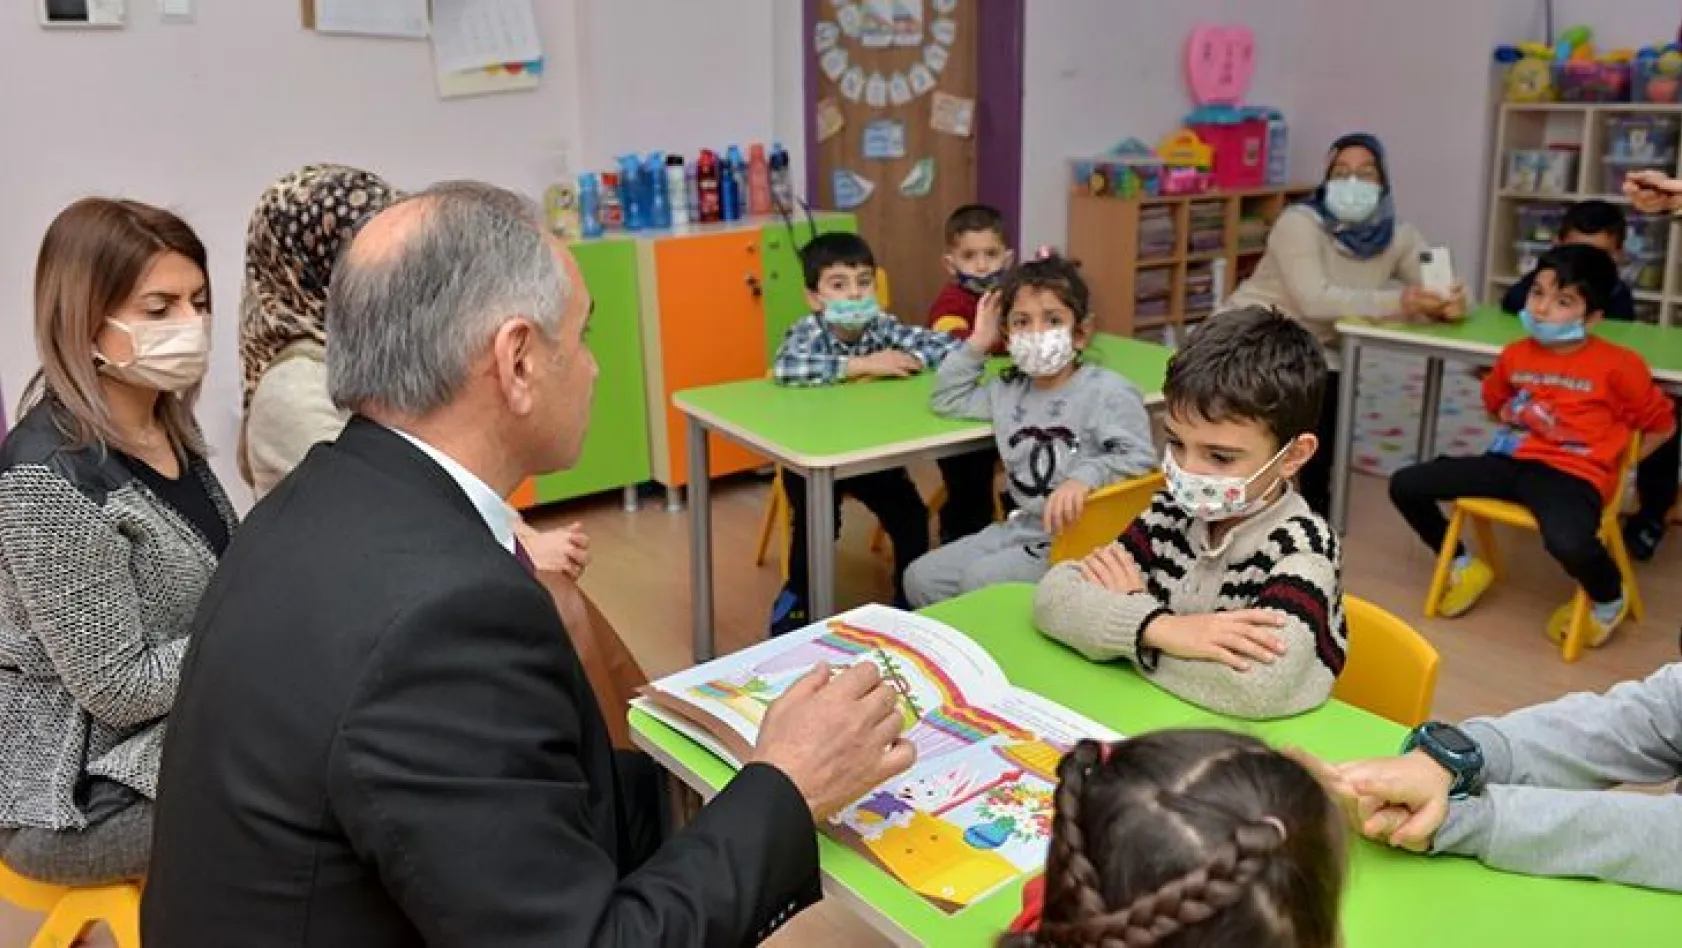 Milli Eğitim Müdürü Gürtürk, öğrencilere masal okudu